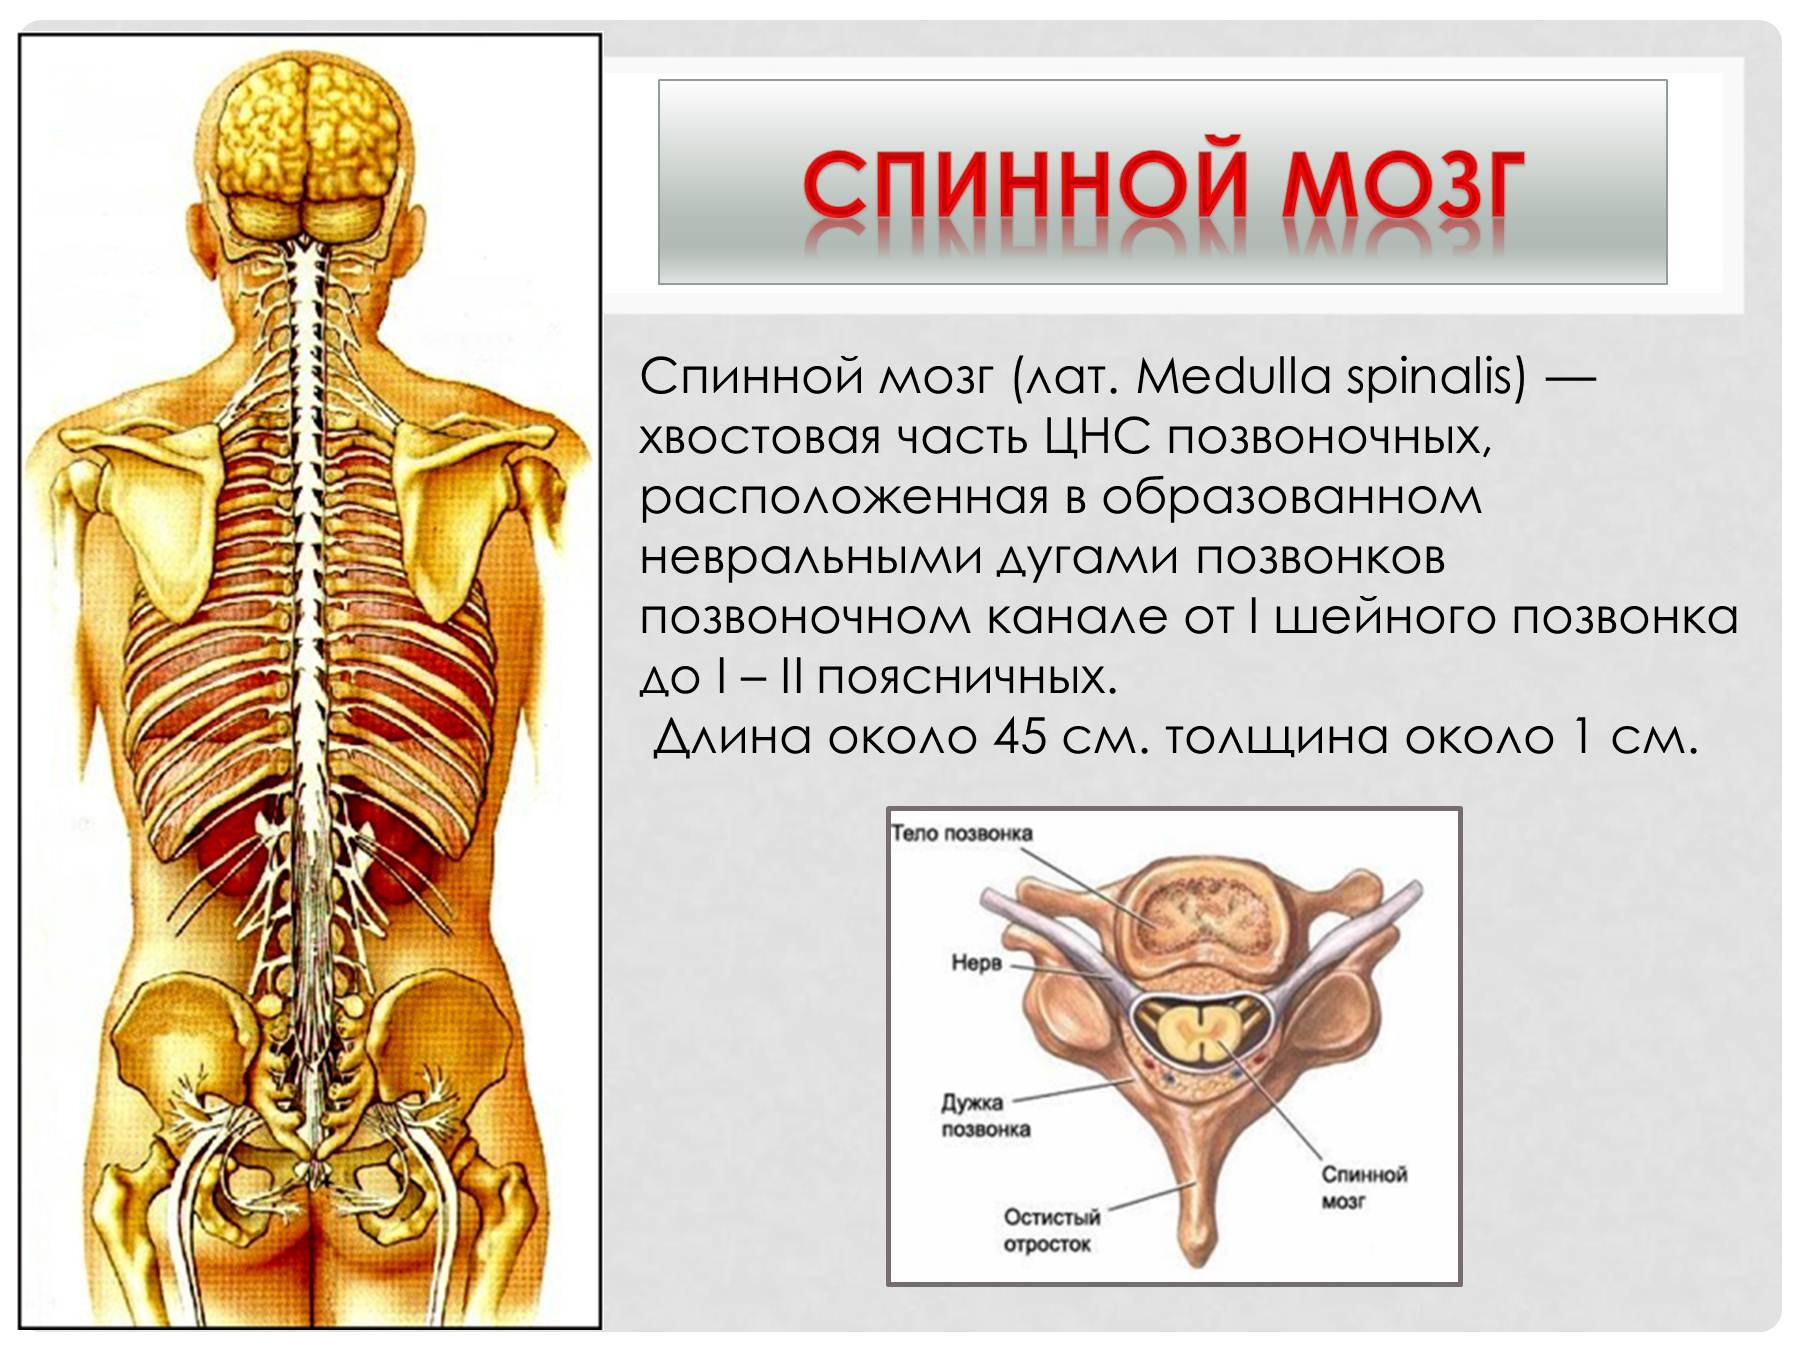 Центральный отдел нервной системы спинной мозг. Нервная система спинного мозга человека анатомия. Функции органов нервной системы спинной мозг. Позвонки человека спинной мозг анатомия.